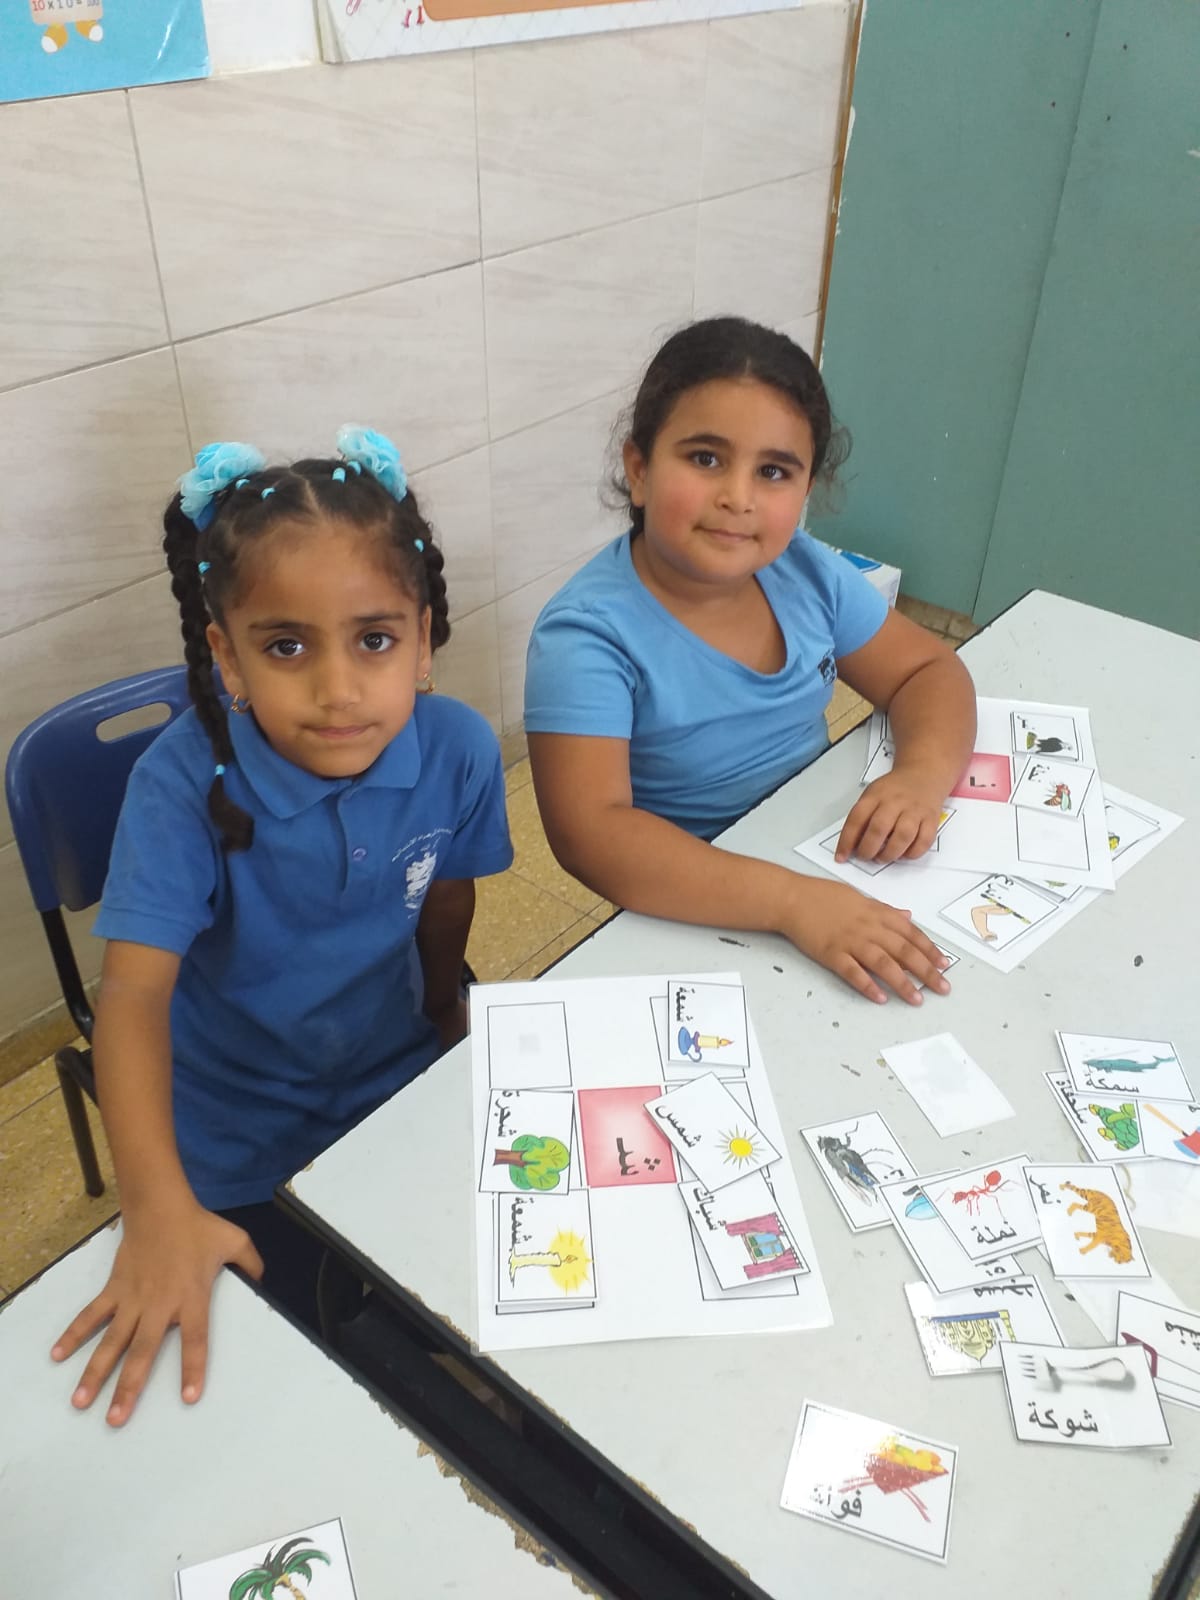  اللد: مدرسة الزهراء تحتفل باللغة العربية بعنوان “في خيمة الحروف